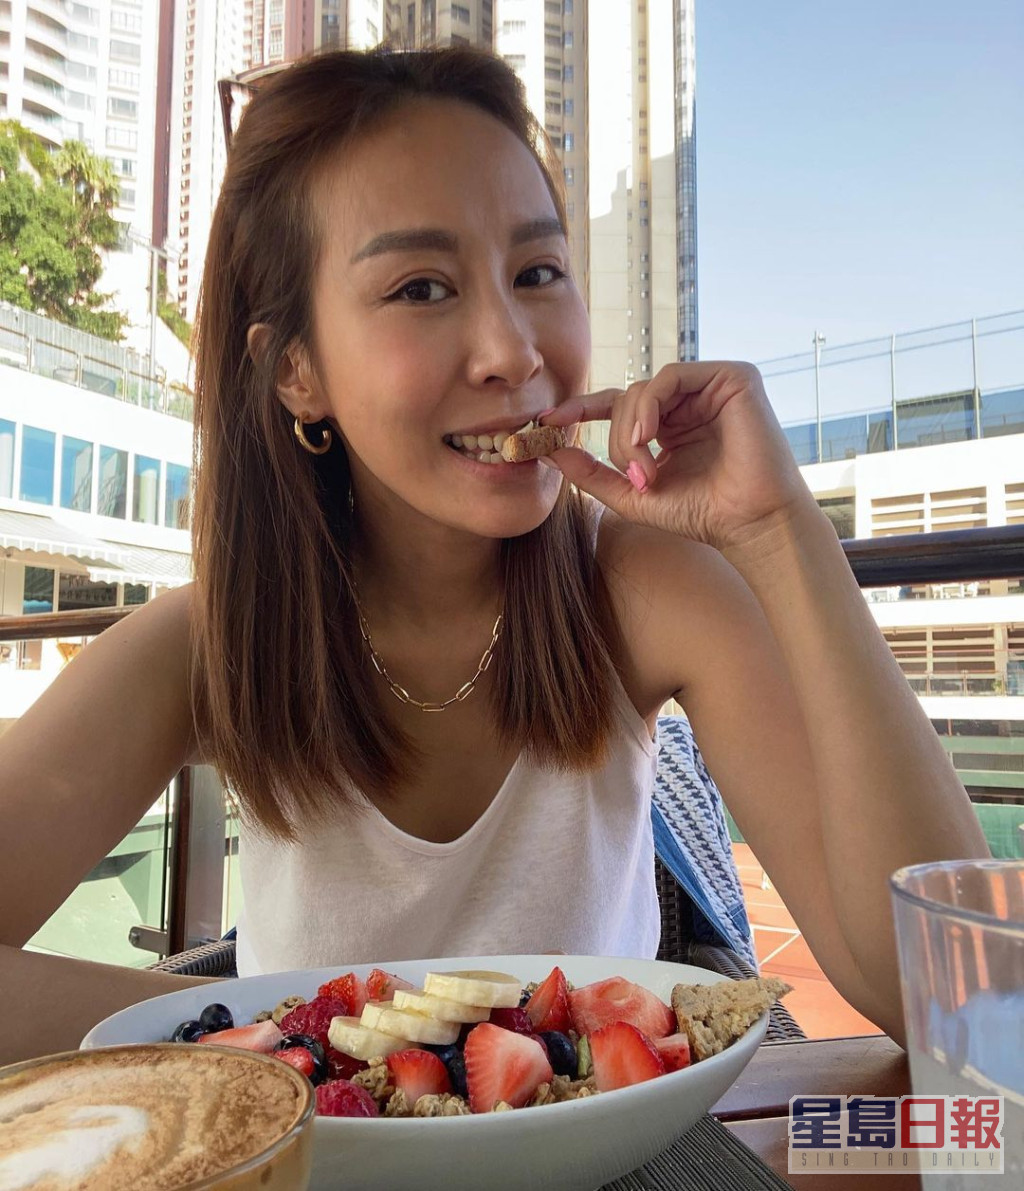 曹敏莉于社交网上载与细仔「撑枱脚」吃早餐的照片。